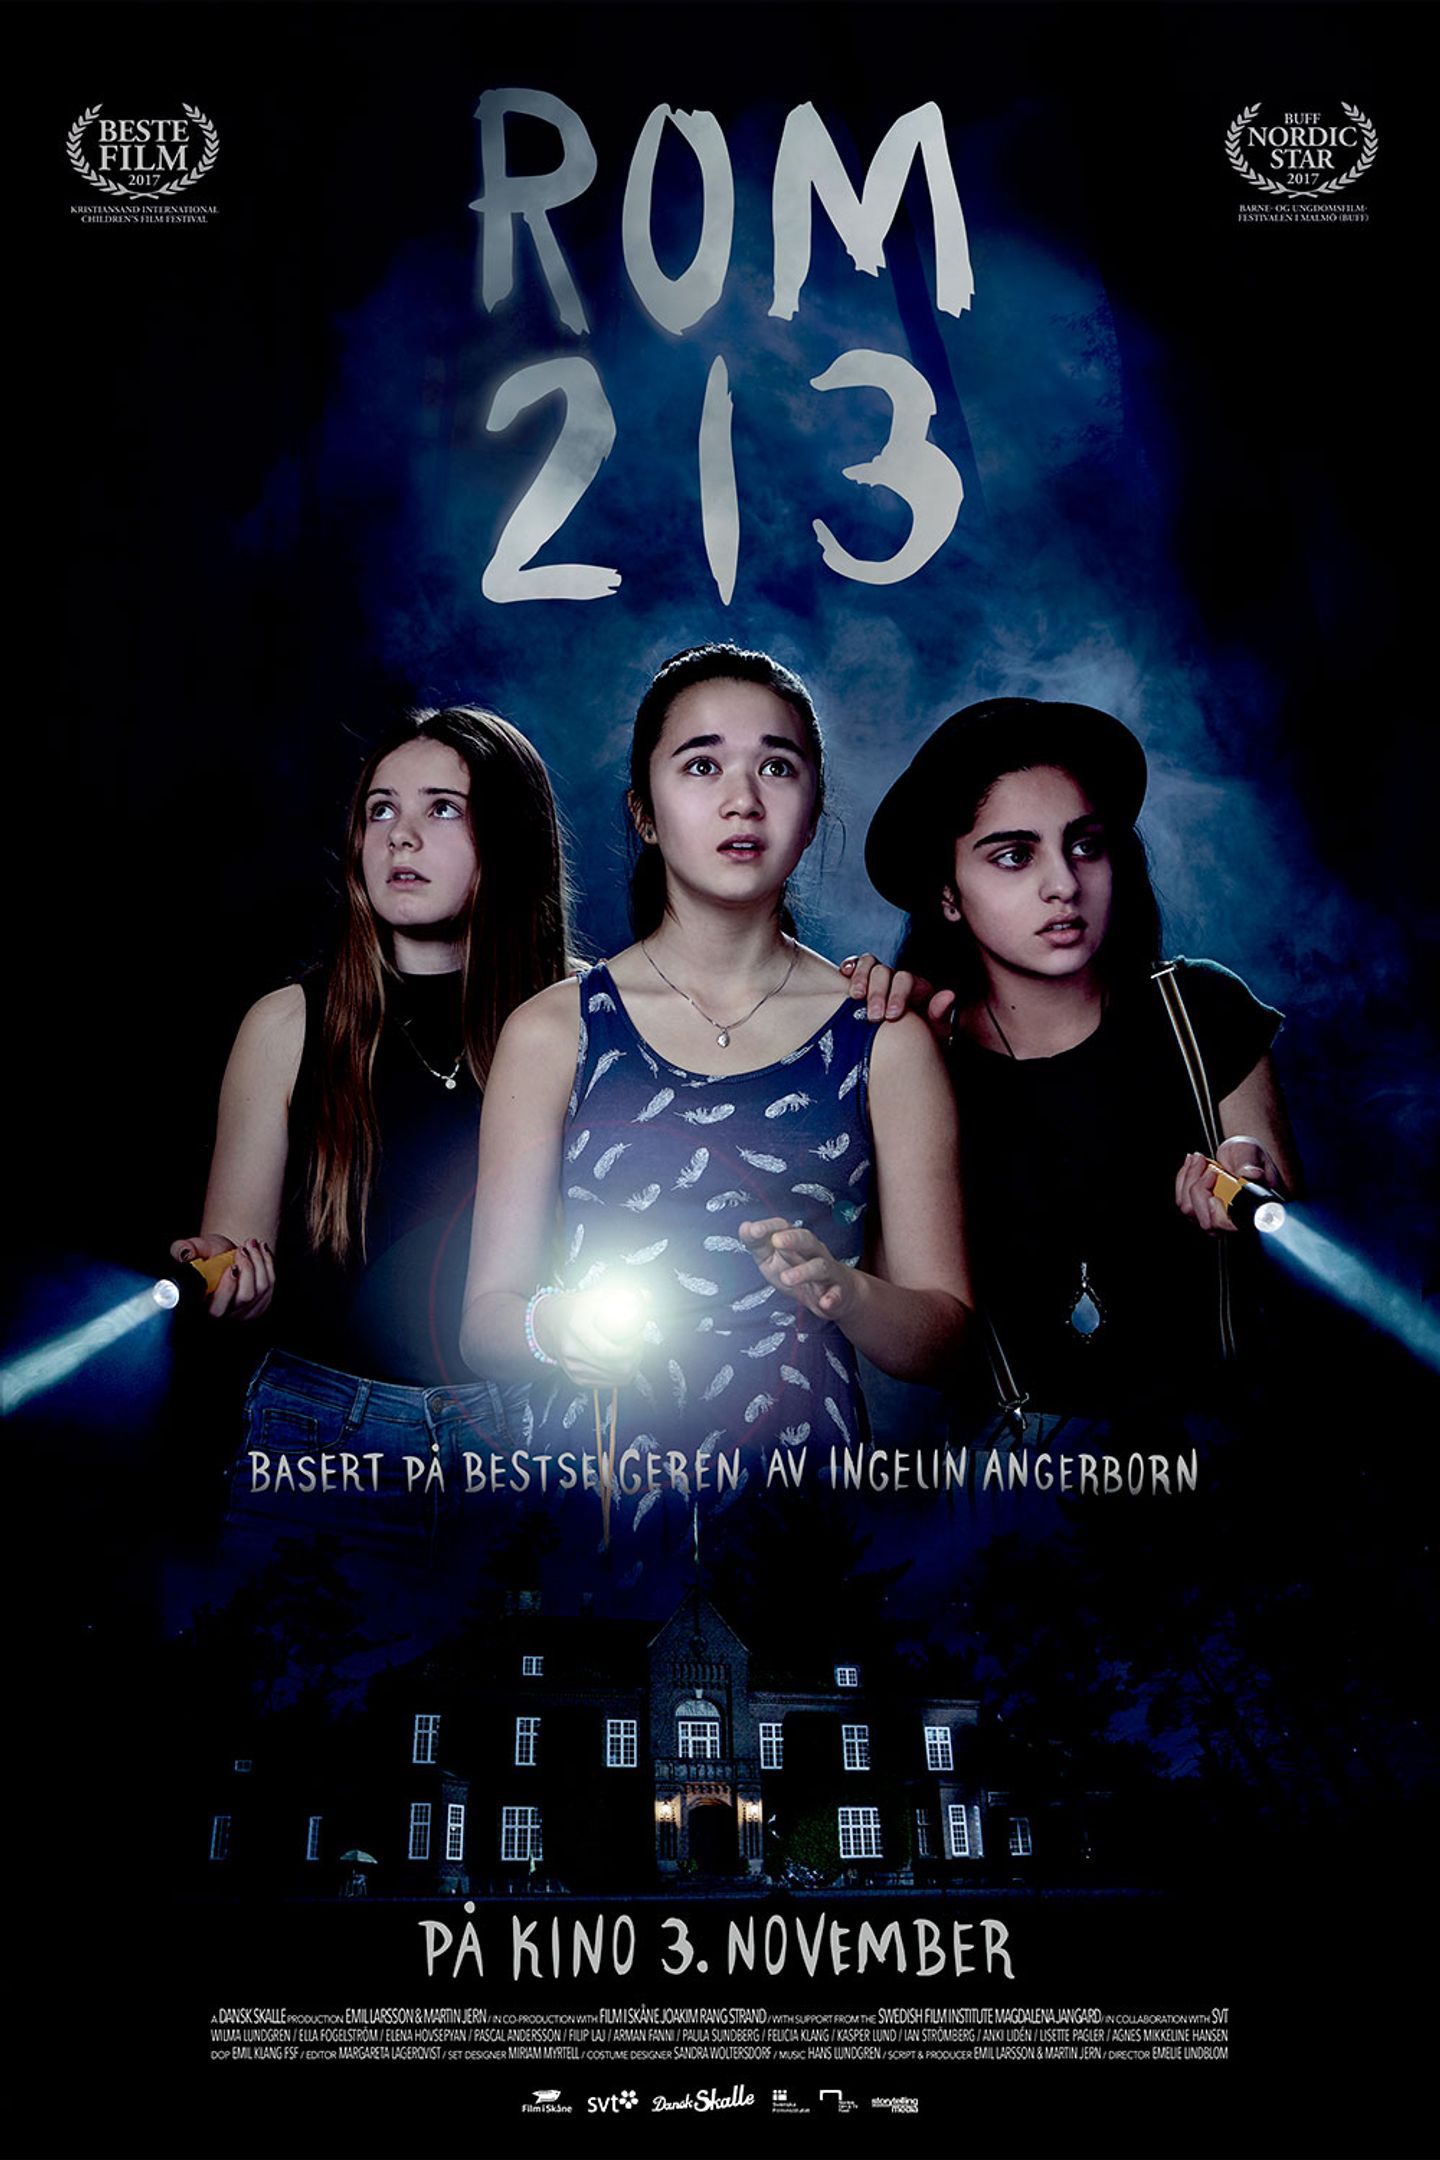 Plakat for 'Rom 213'